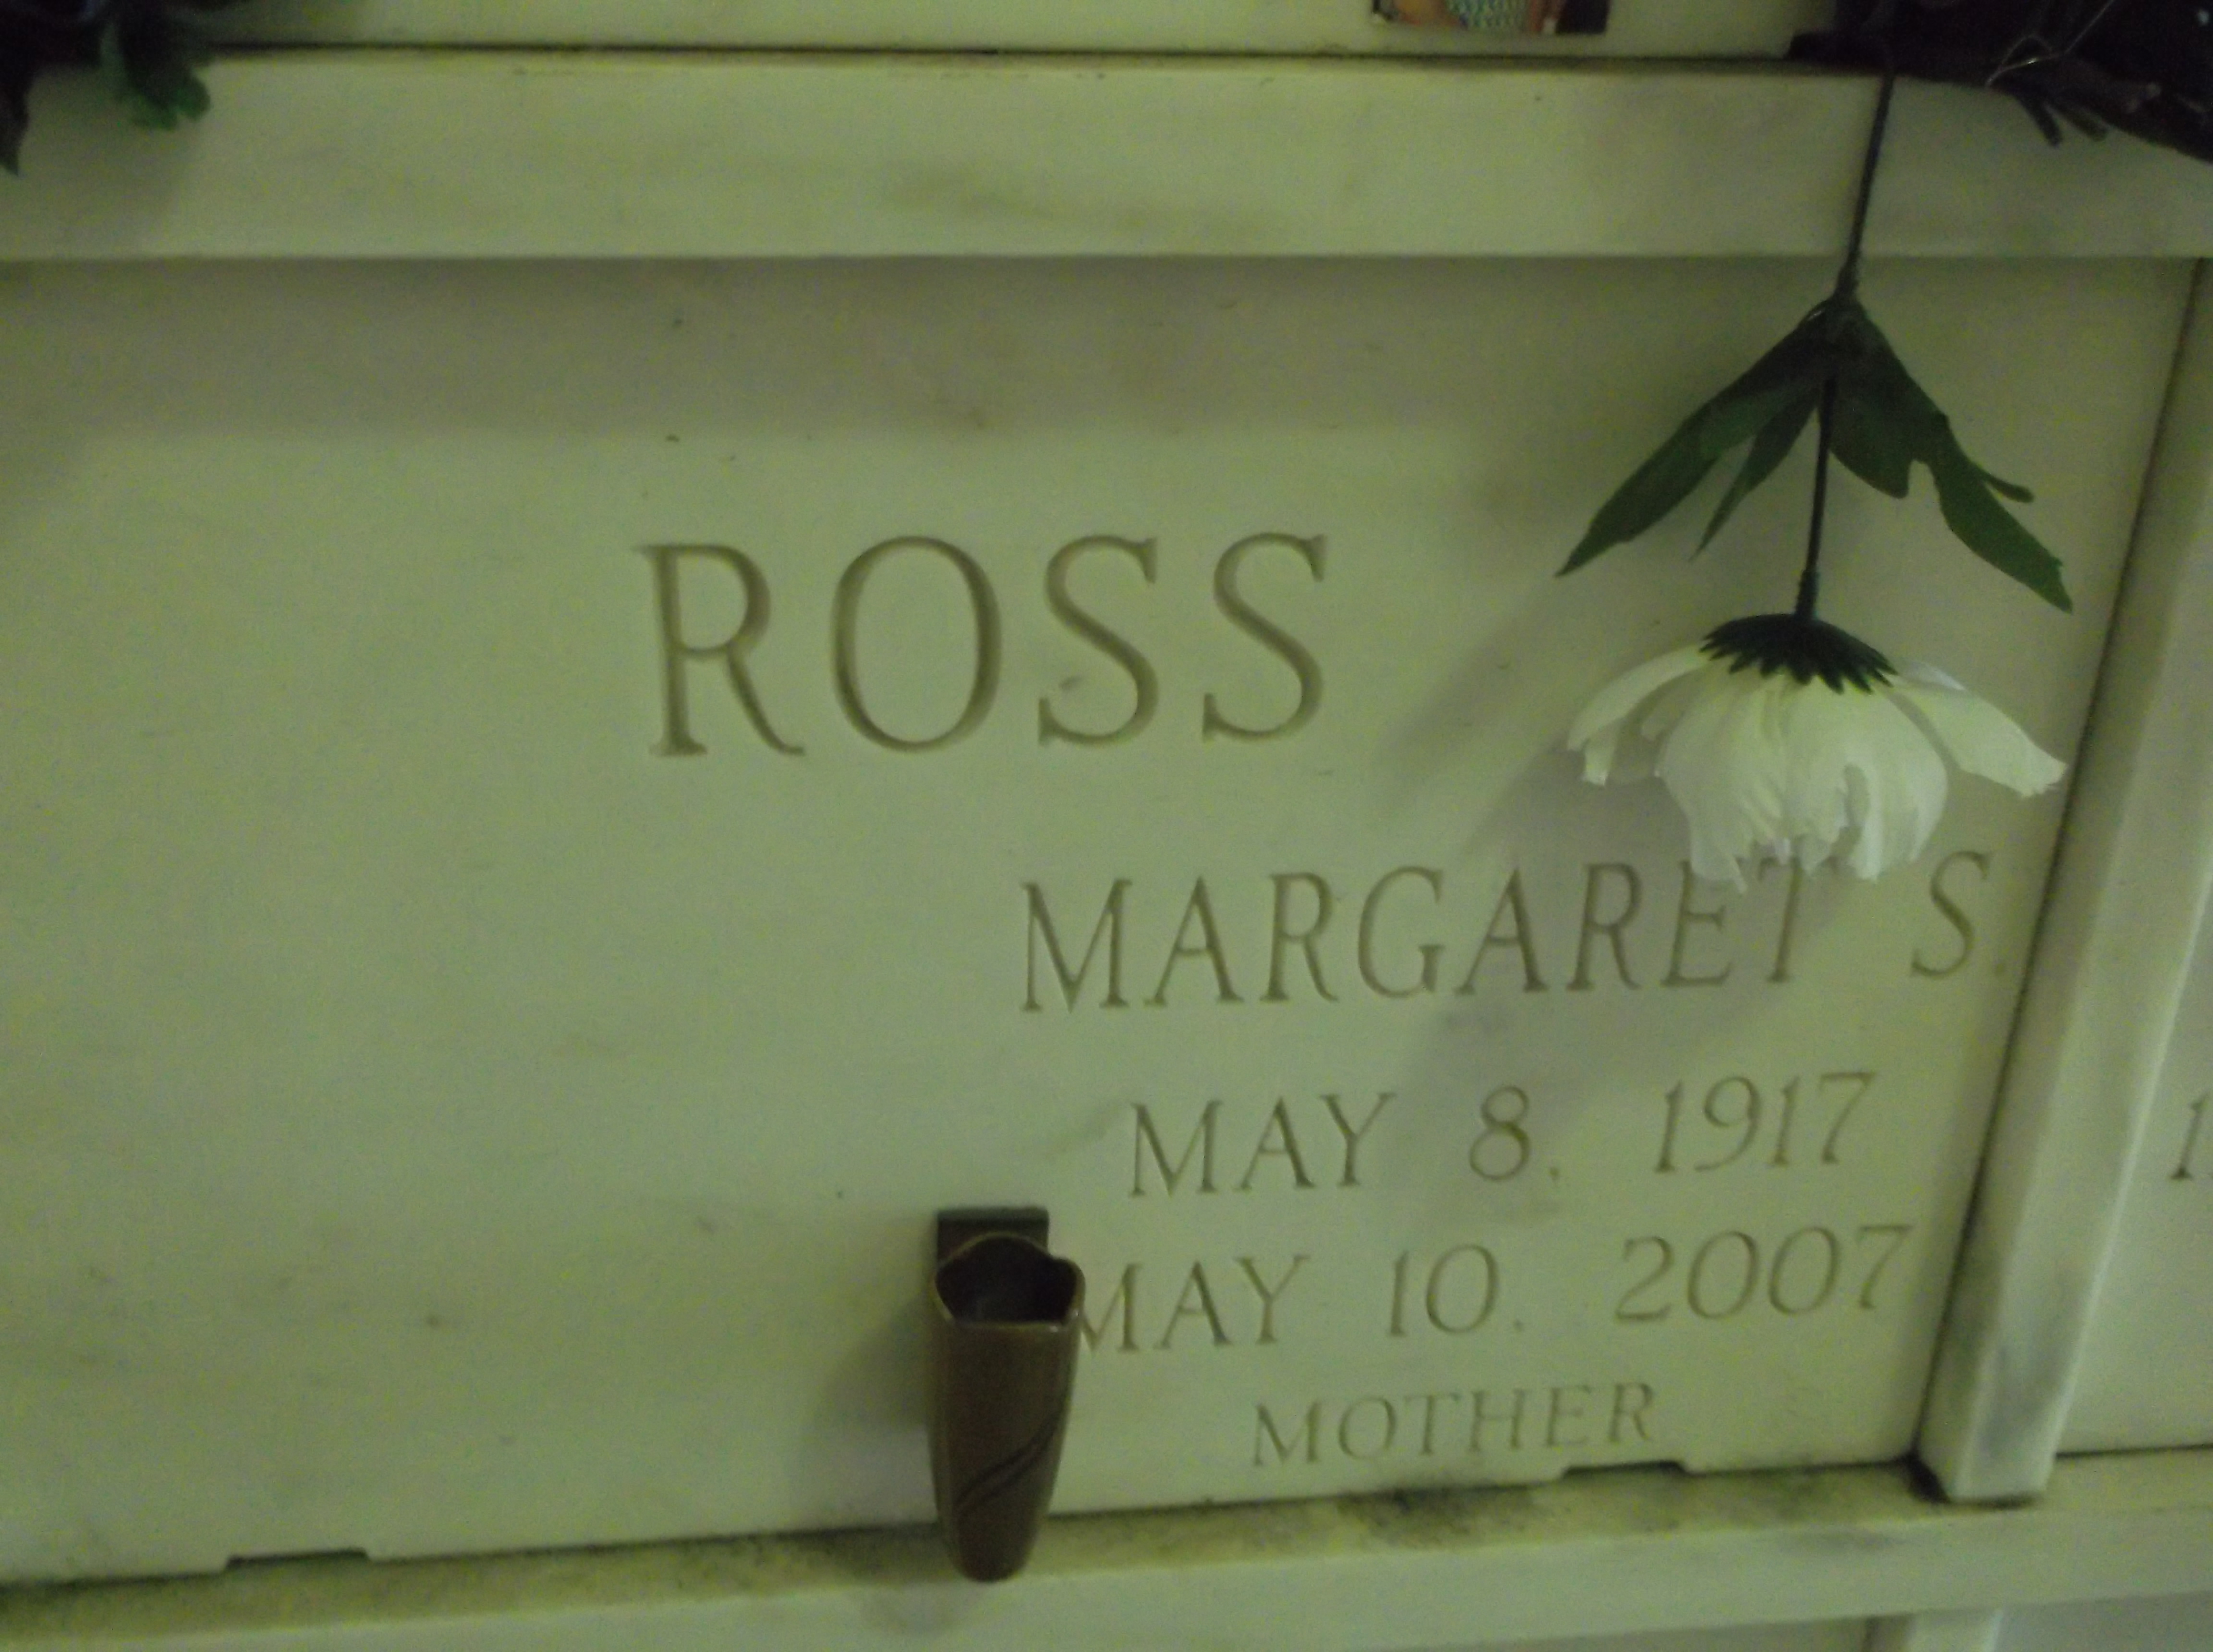 Margaret S Ross